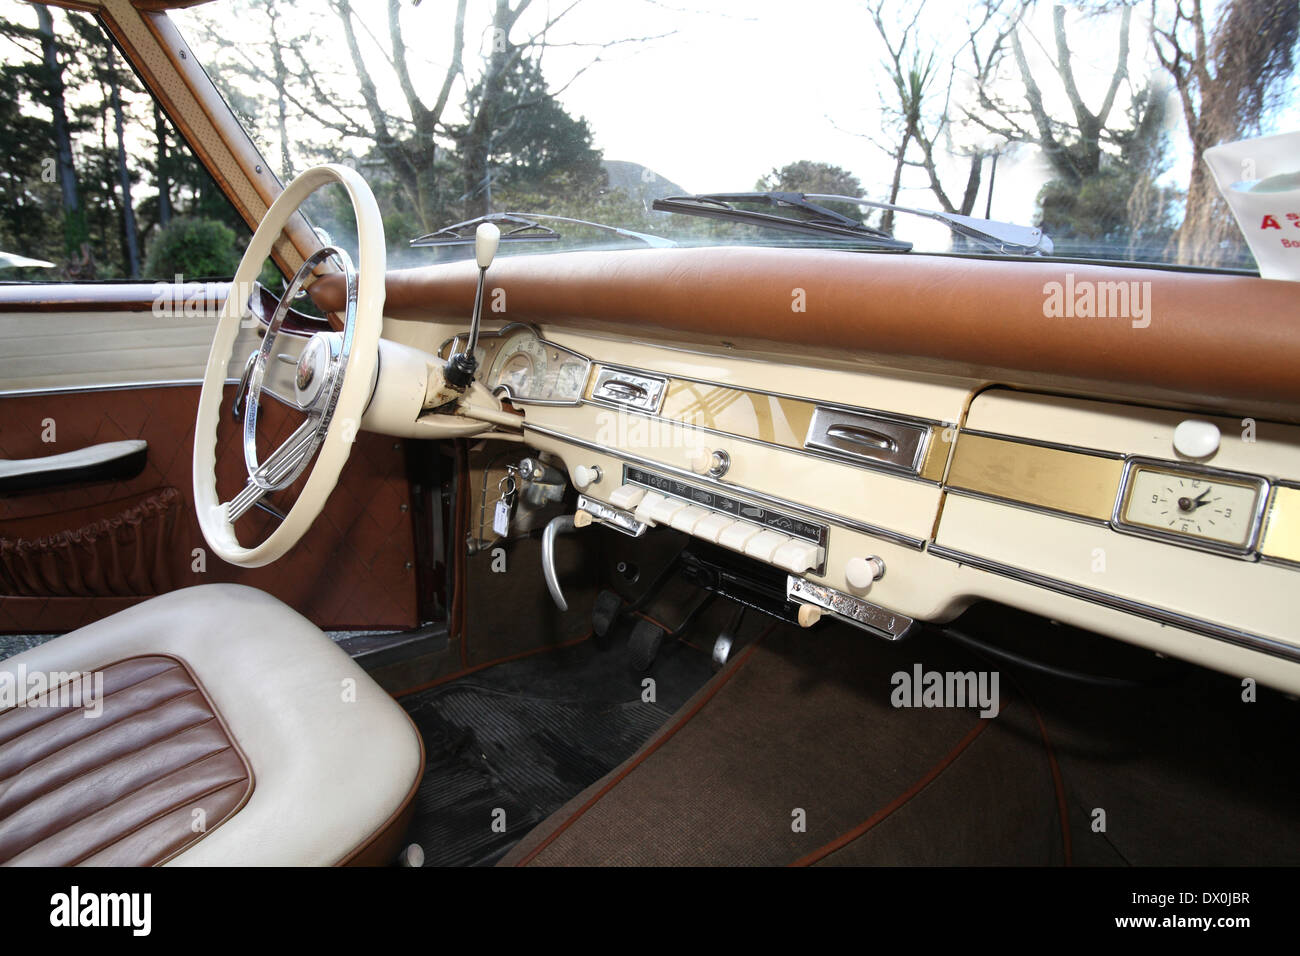 Borgward isabella coupe Stock Photo